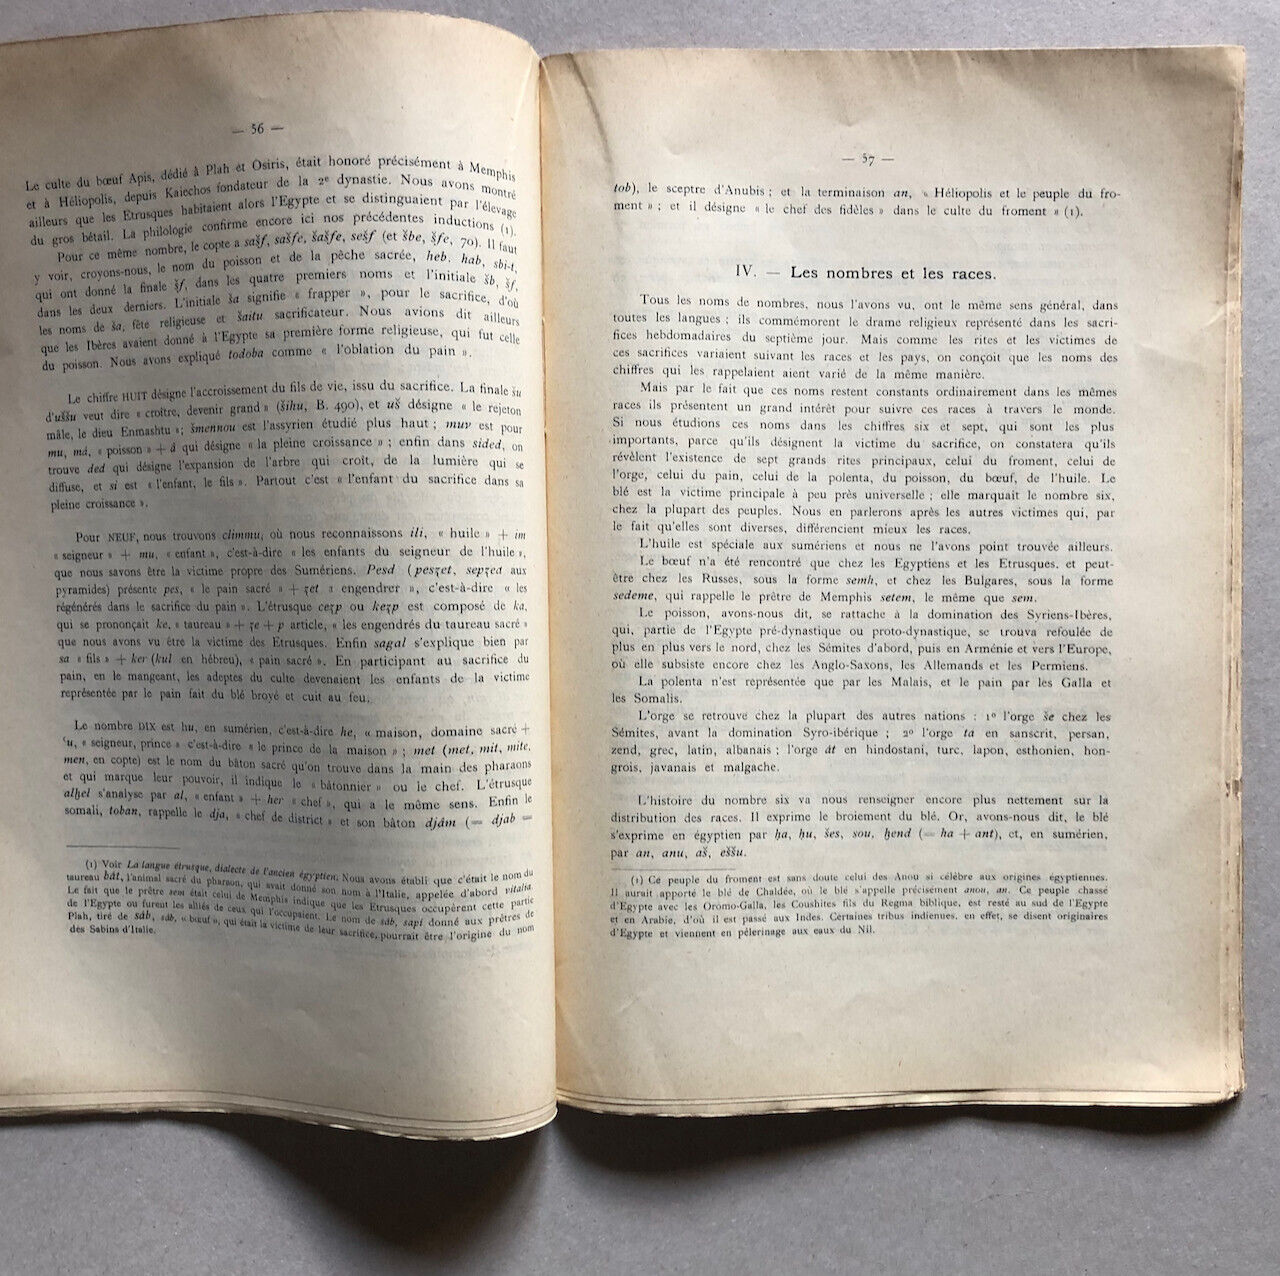 H. de Barenton — L'Origine des grammaires — études orientales —  Geuthner — 1925